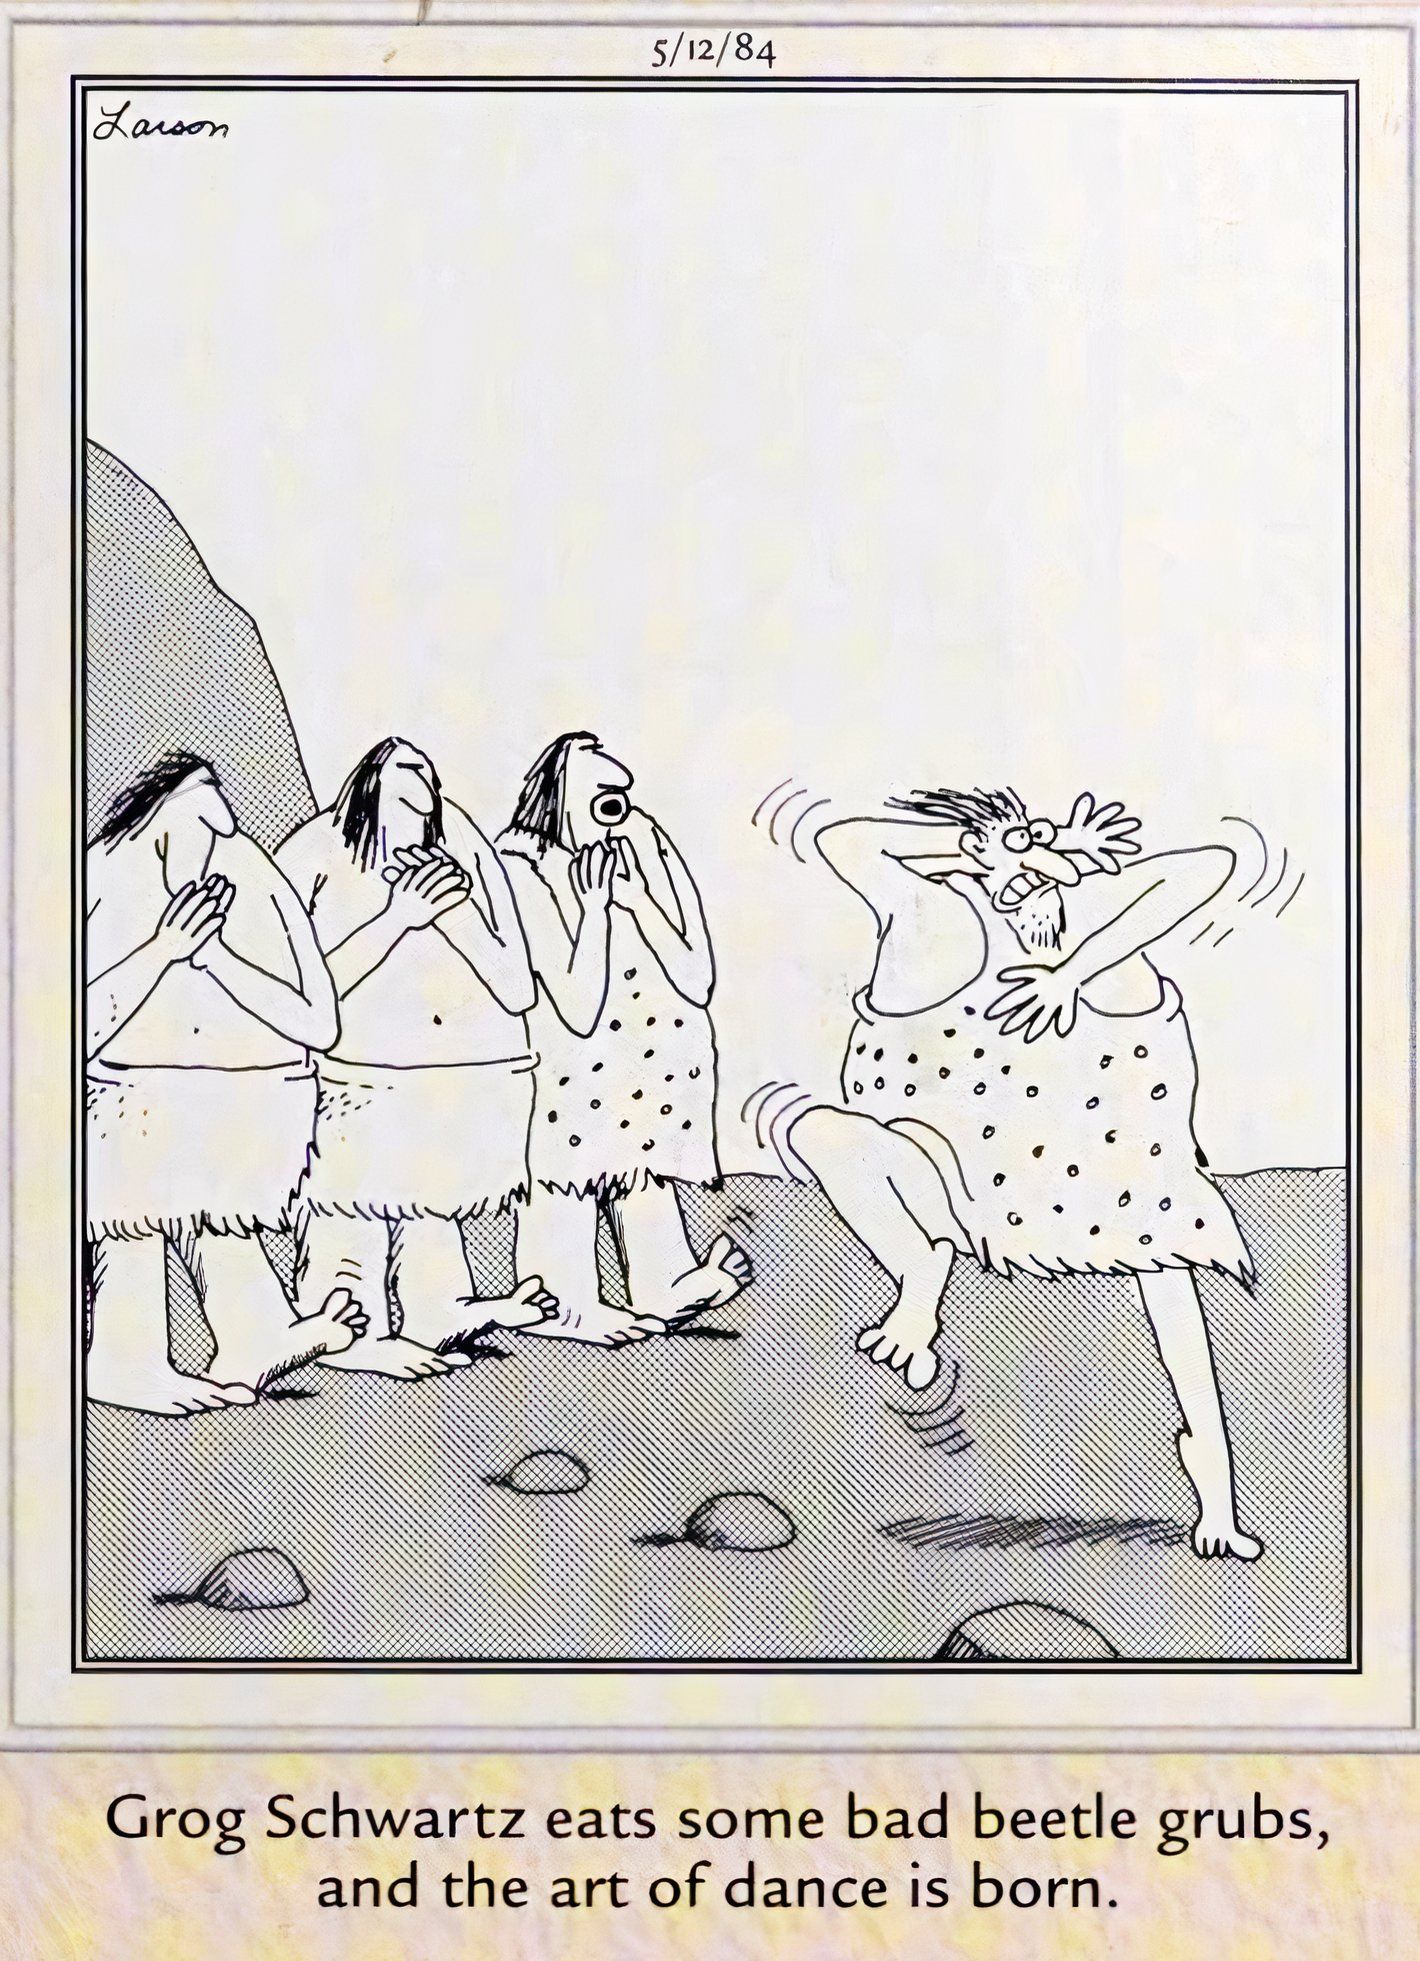 Far Side, 12 de maio de 1984, homem pré-histórico inventa dança após comer besouro psicodélico